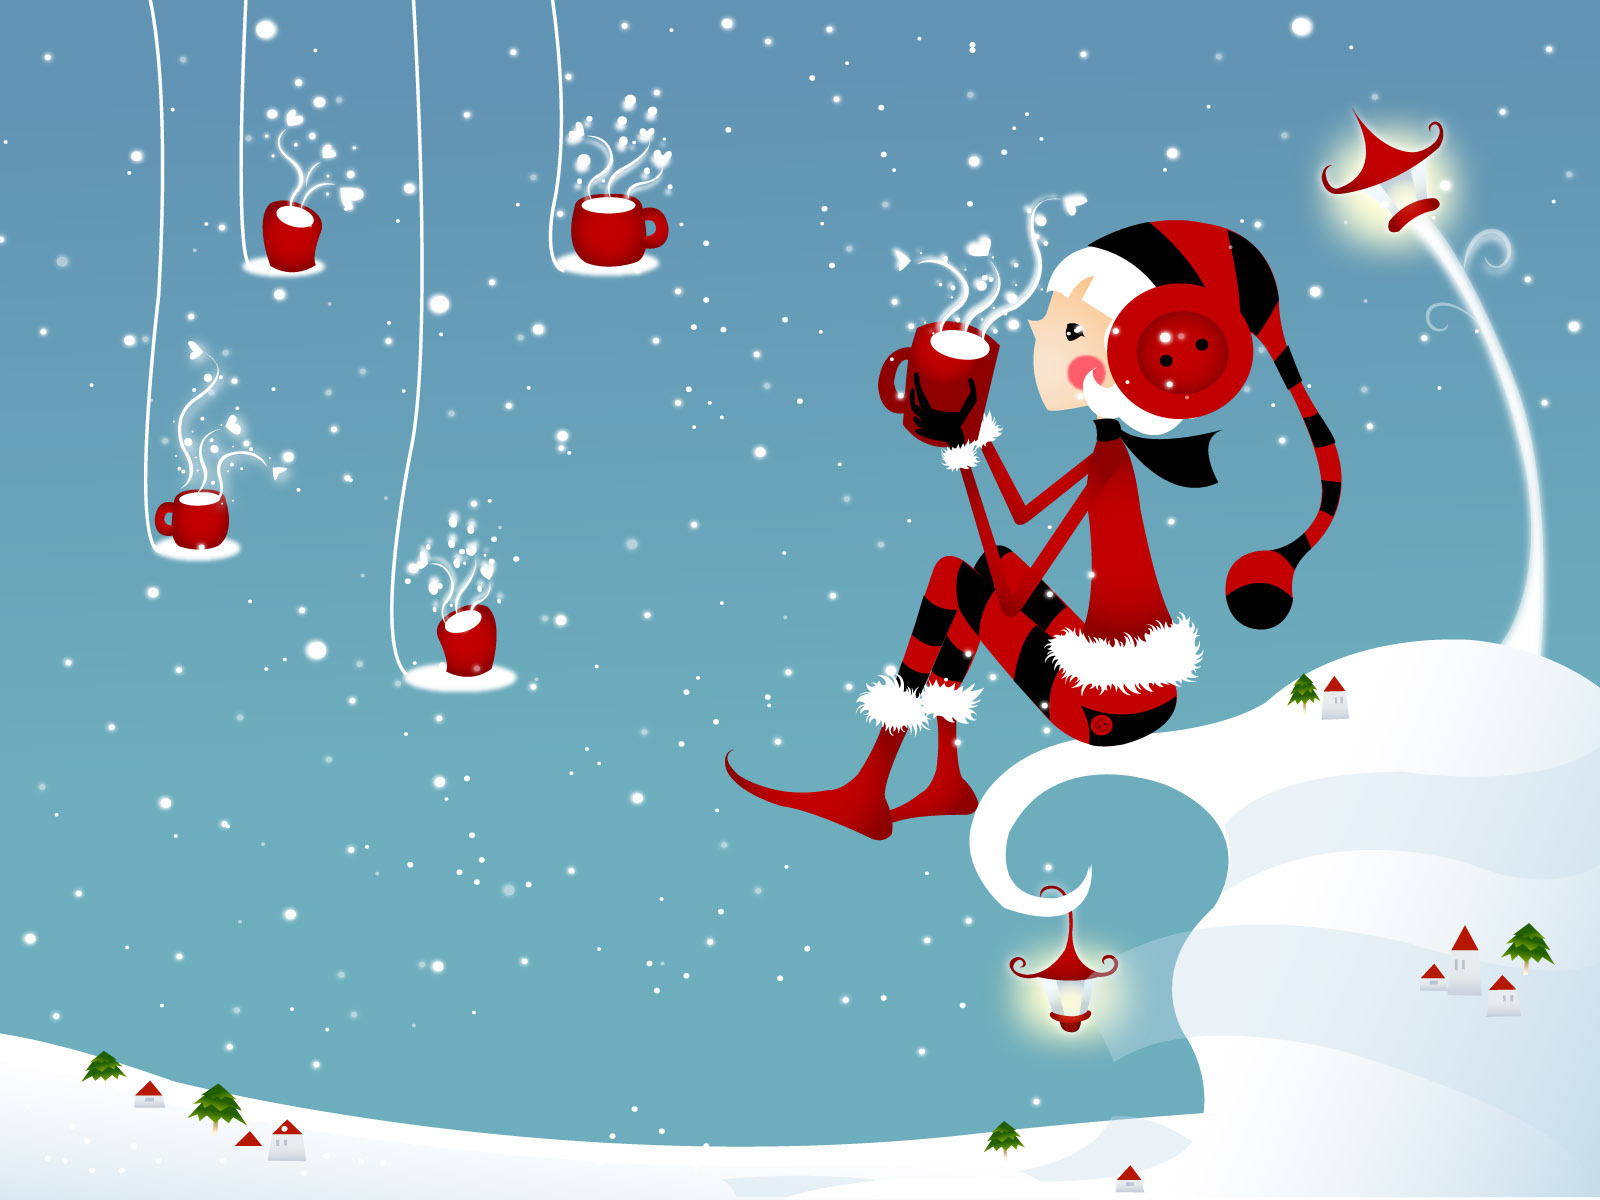 Christmas-wallpaper-christmas-9330975-1600-1200.jpg